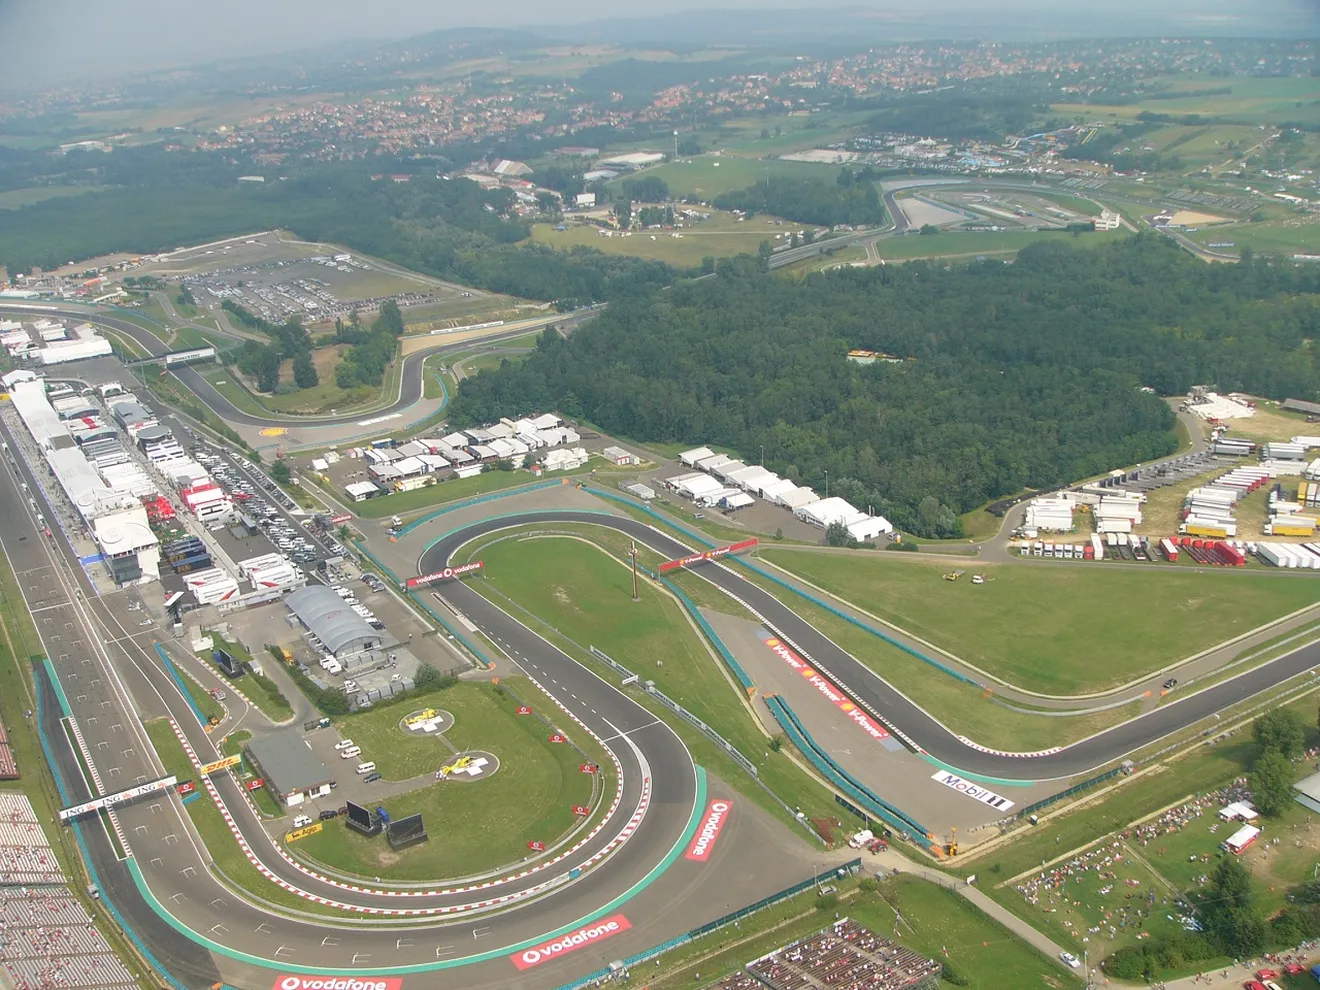 Agenda, horarios del GP de Hungria 2014 F1 y datos del circuito de Hungaroring